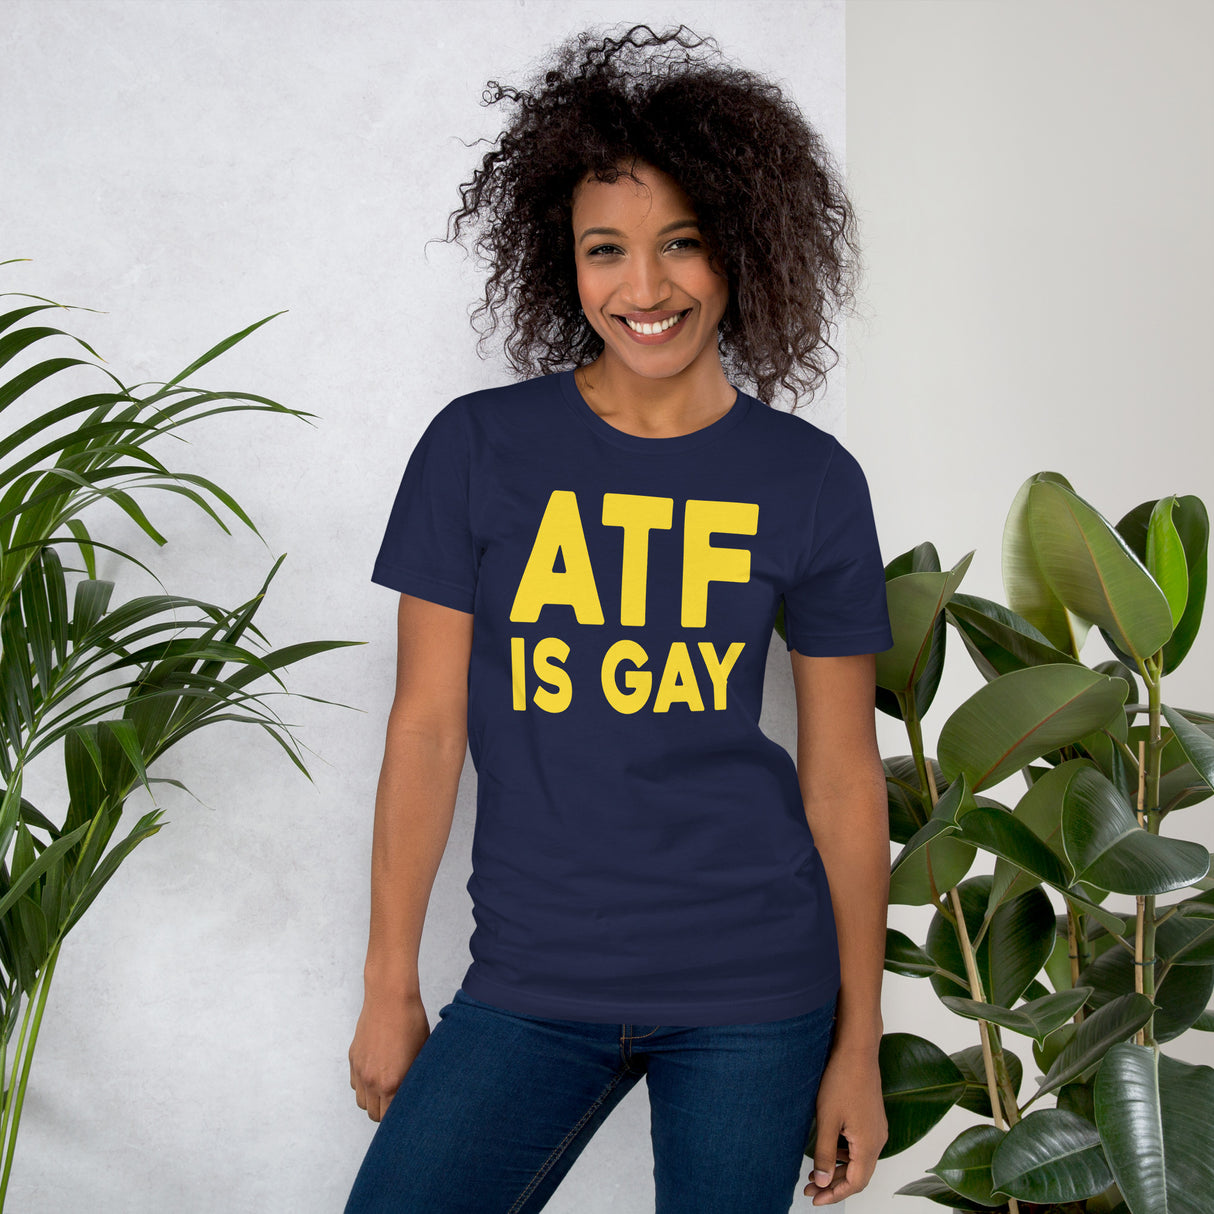 ATF Is Gay Women's Shirt